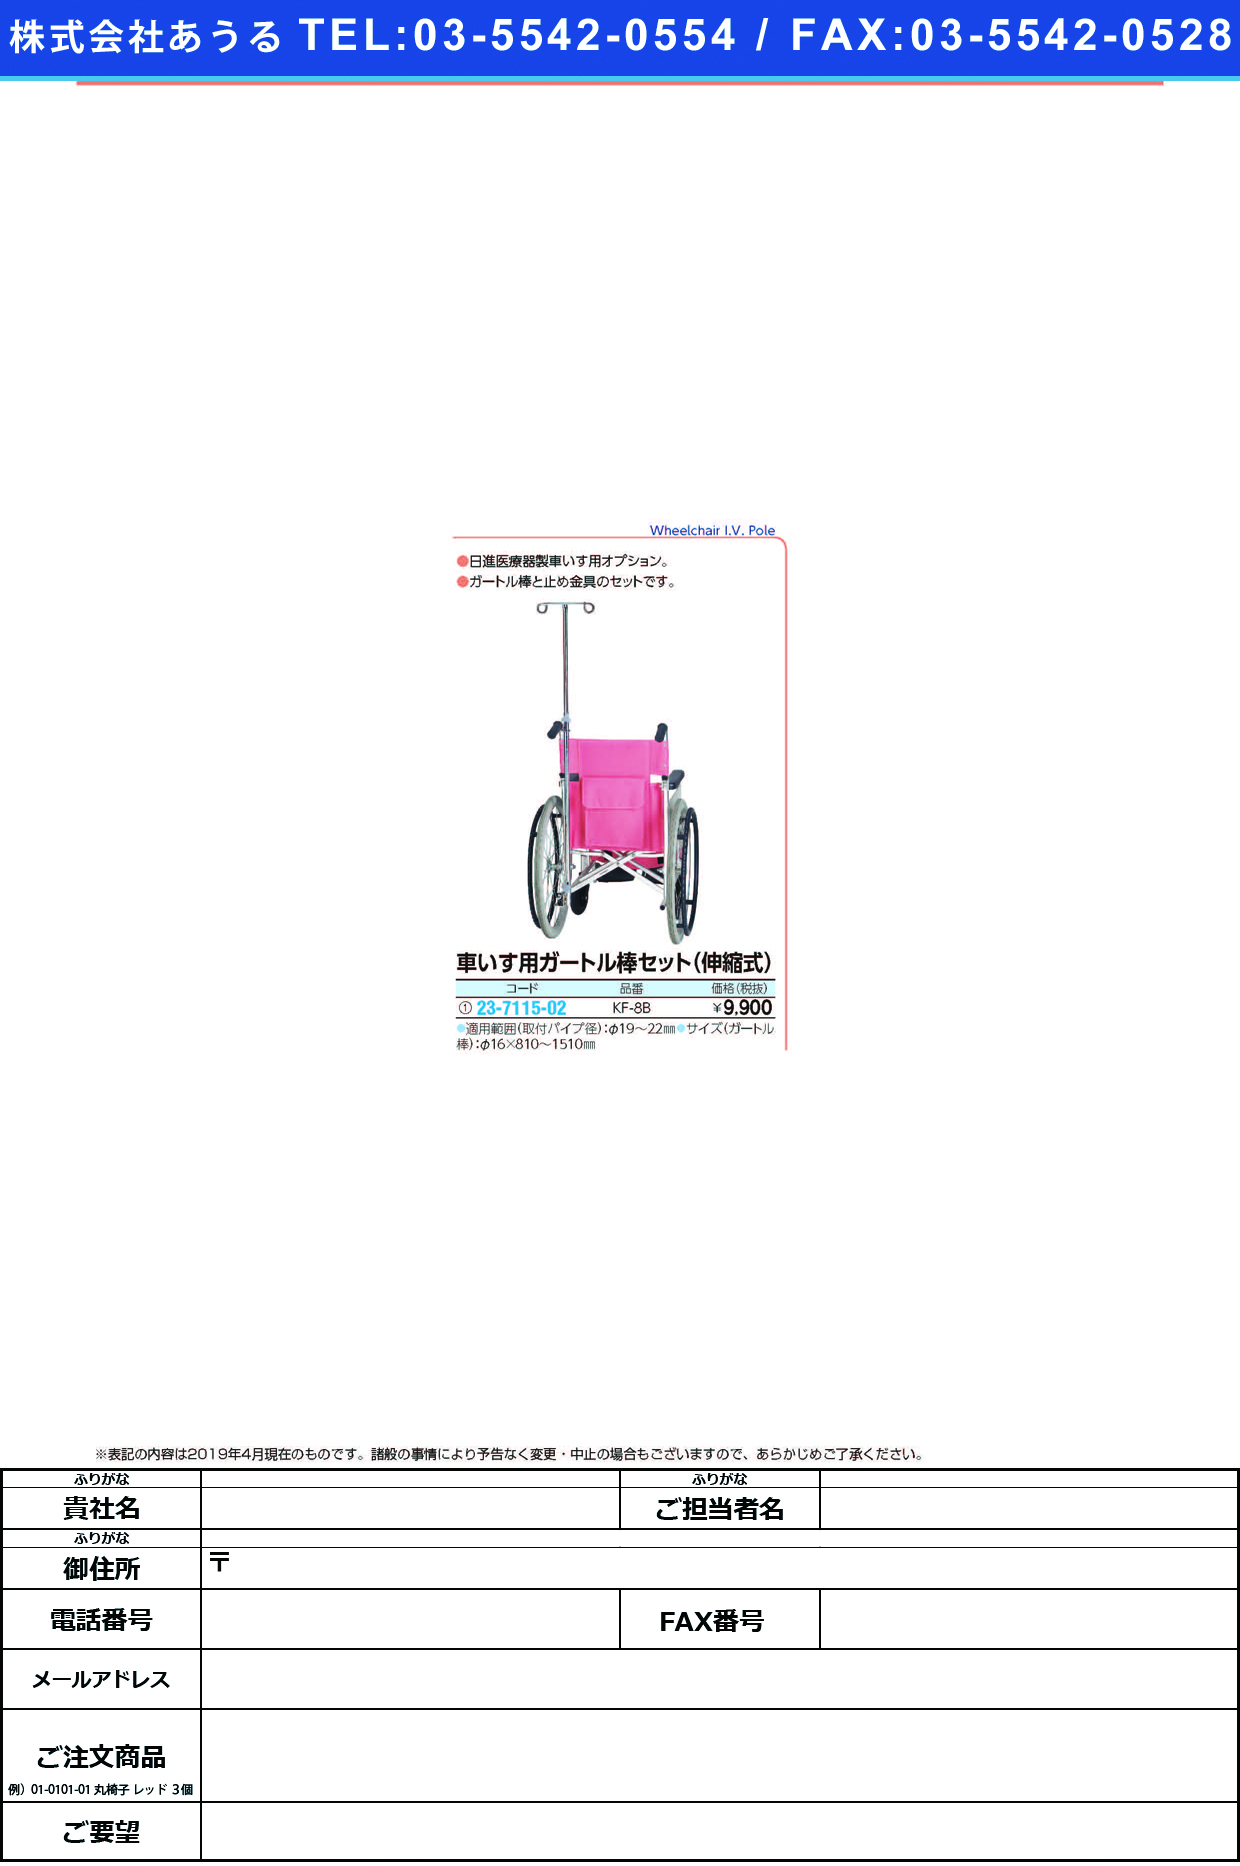 (23-7115-02)車いす用ガートル棒セット（伸縮式） KF-8B ｸﾙﾏｲｽﾖｳｶﾞｰﾄﾙﾎﾞｳｾｯﾄ(日進医療器)【1式単位】【2019年カタログ商品】